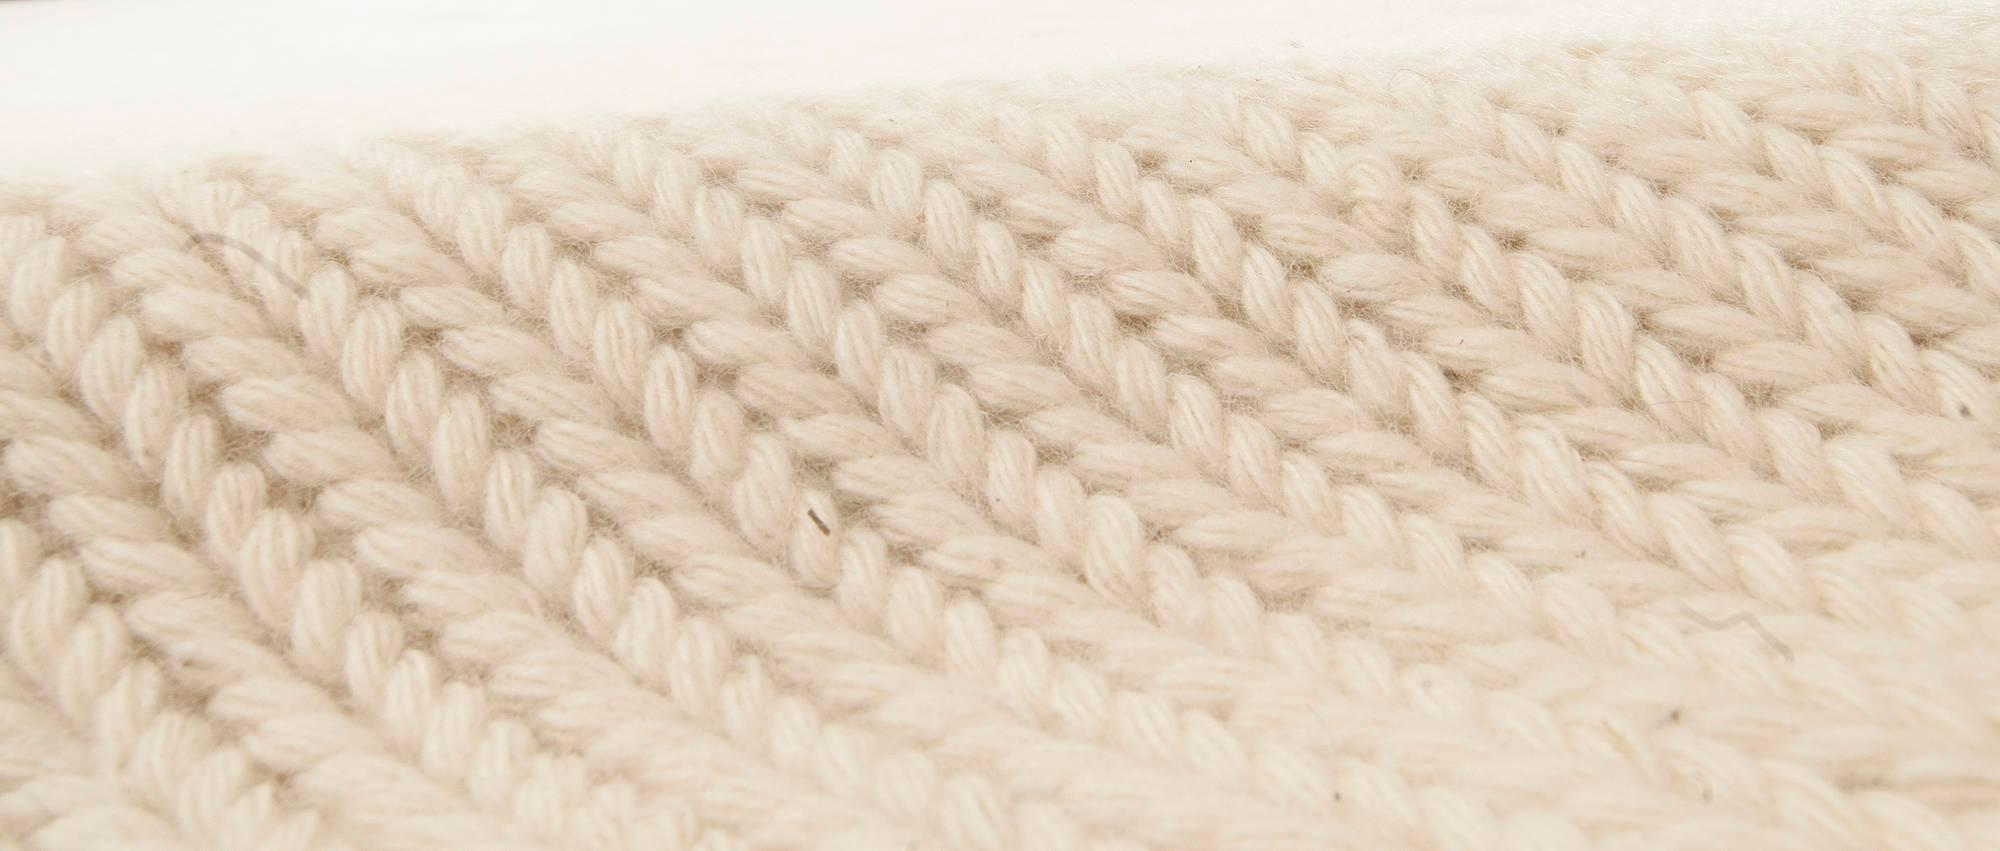 Contemporary beige flat-weave wool rug by Doris Leslie Blau
Size: 13'0